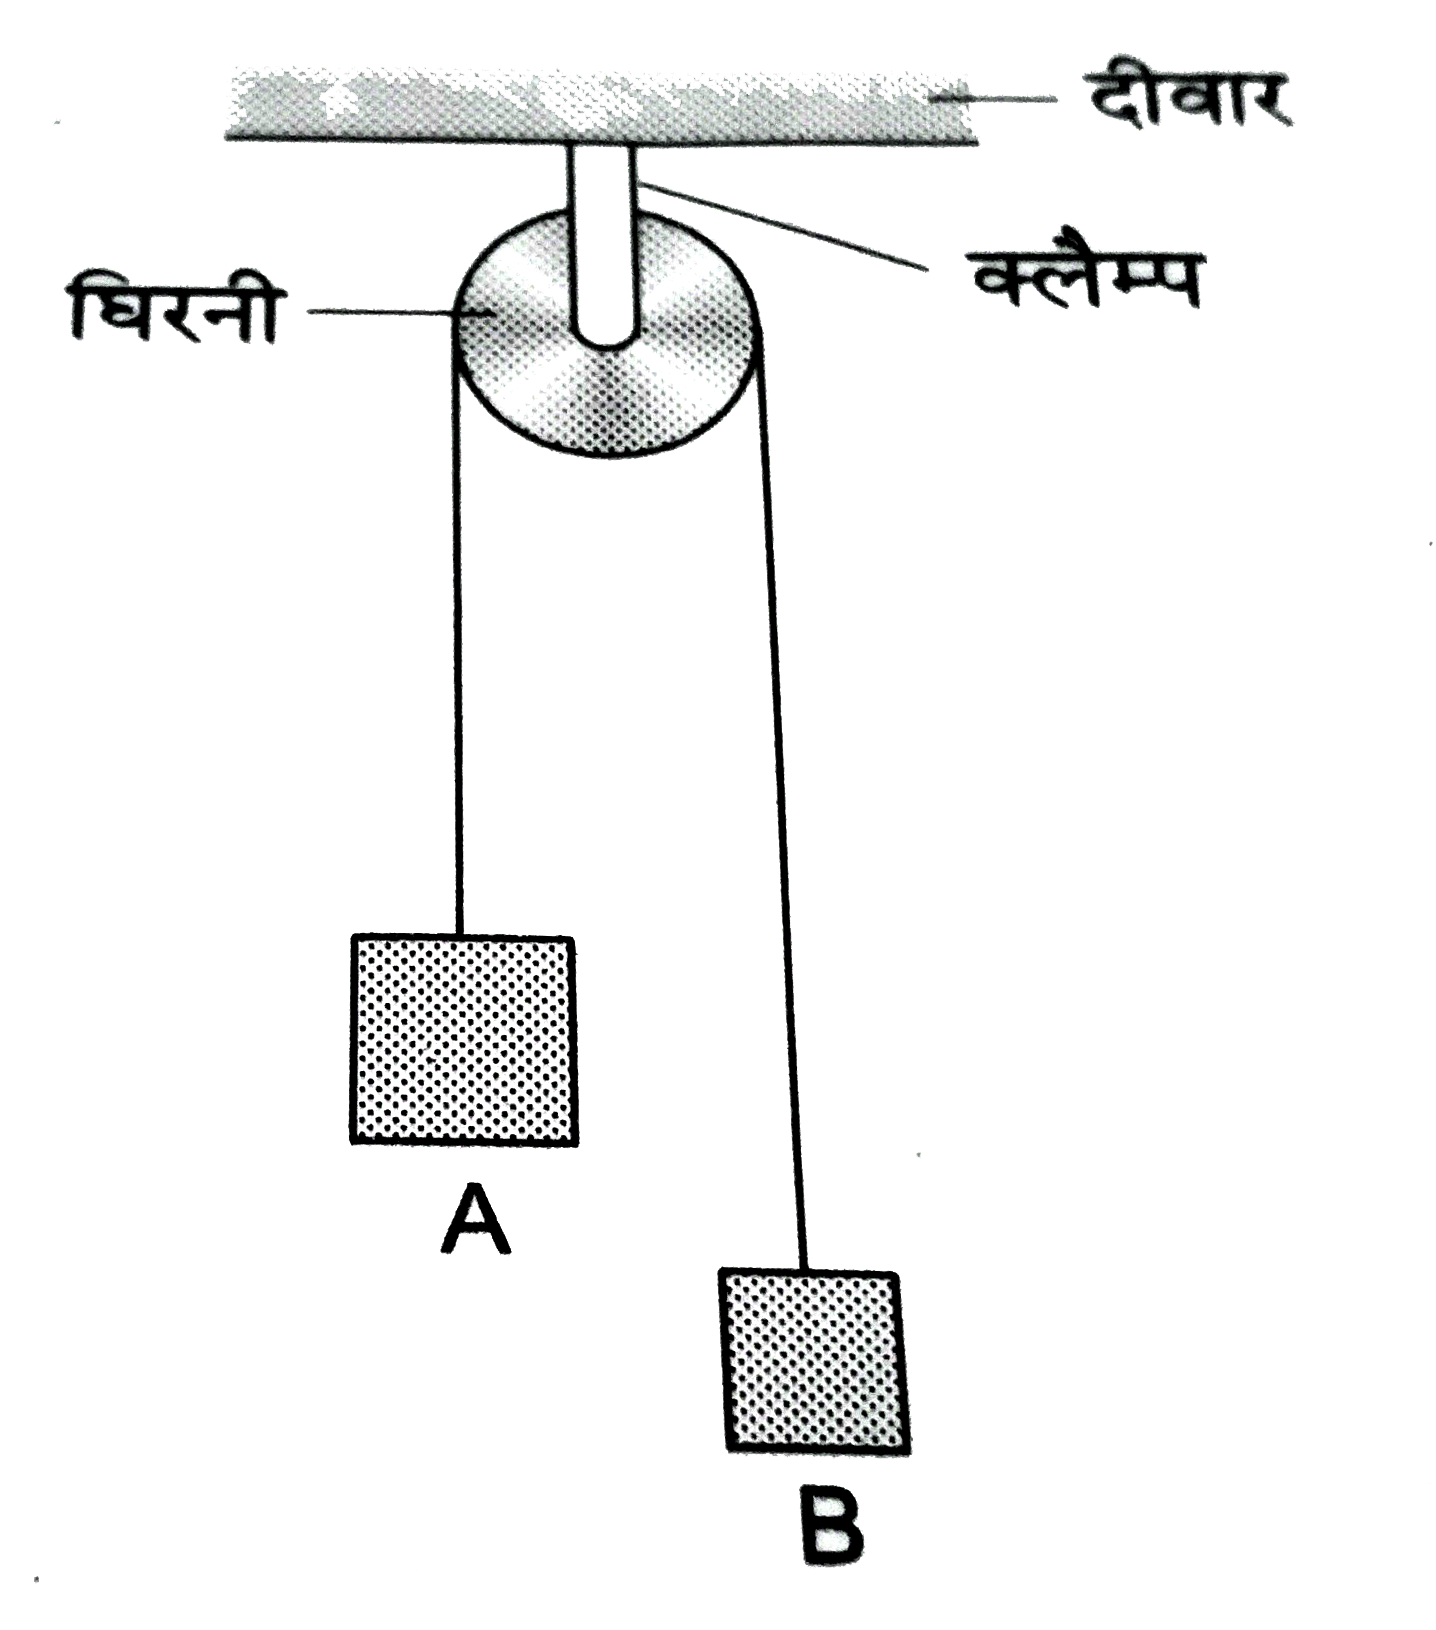 एक घर्षणरहित घिरनी छत से एक क्लैम्प द्वारा टाँगकर रखी गई है । घिरनी से होकर जाती एक नगण्य भार वाली डोरी के सिरों से दो गुटके A तथा B, जिनके द्रव्यमान क्रमश : m(1) तथा m(2) हैं, बाँधकर लटकाए गए हैं ।   रस्सी में तनाव का मान निकालें ।